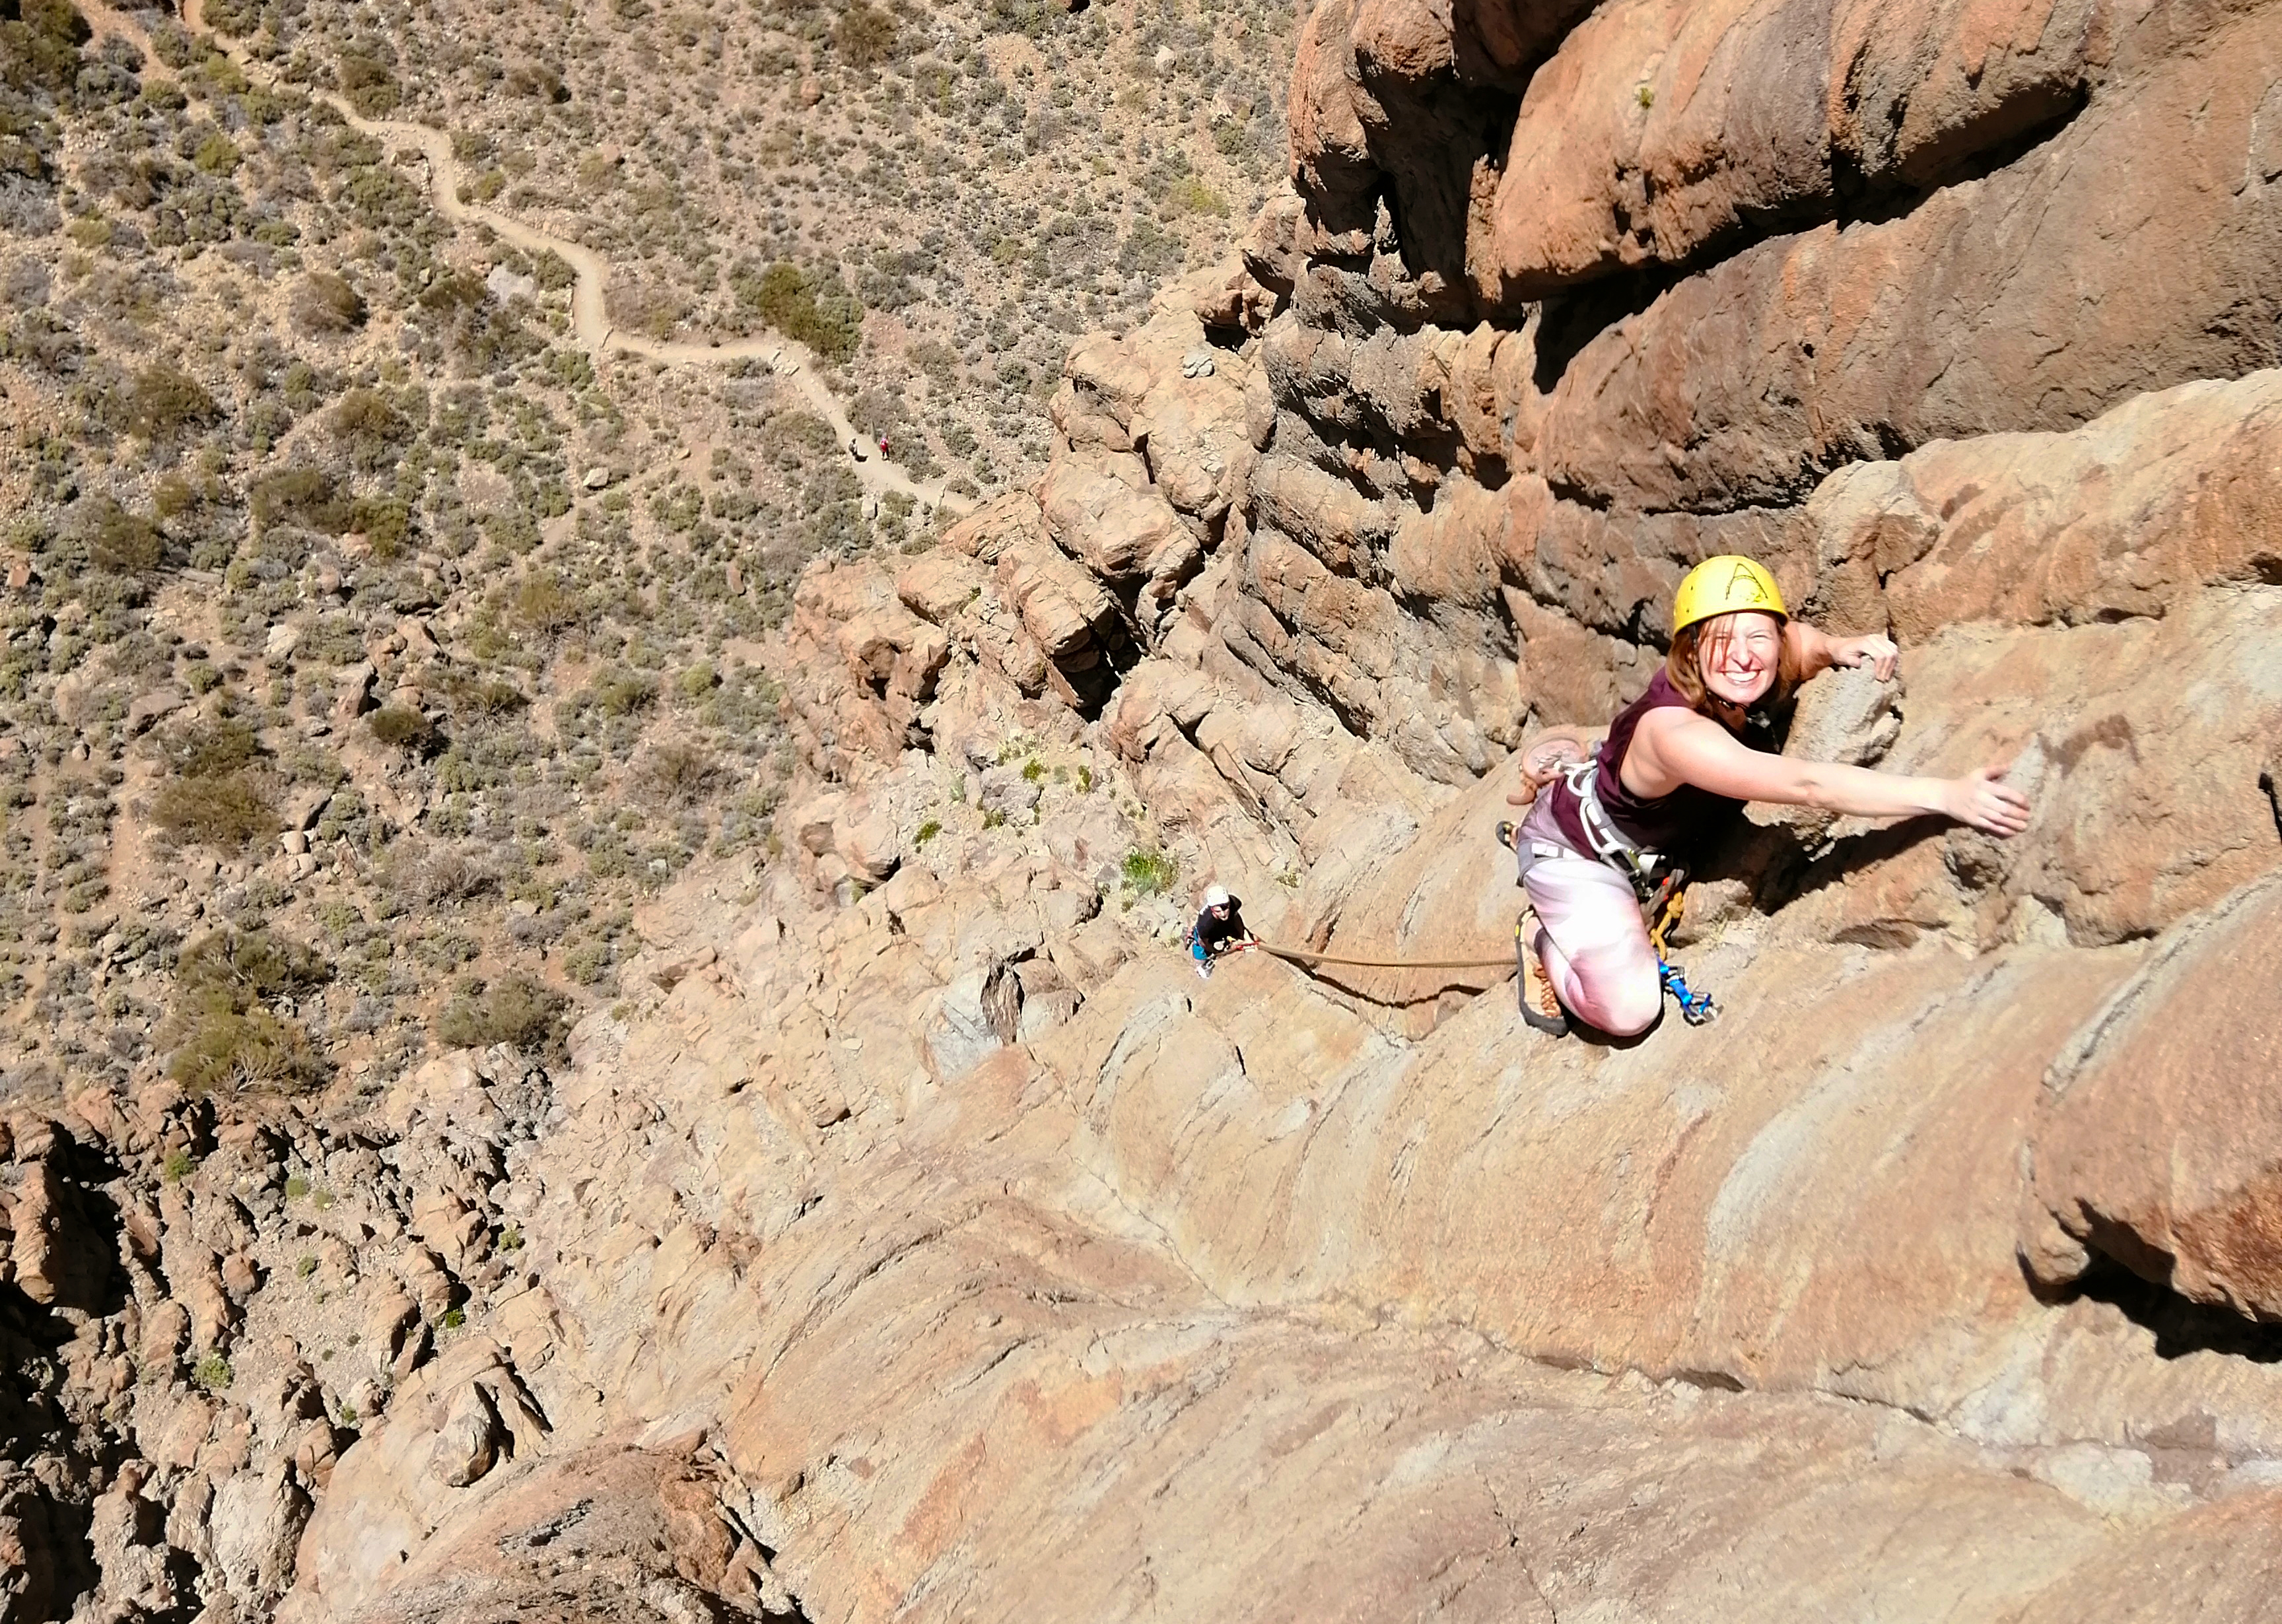 Rock climbing in Arico, Tenerife